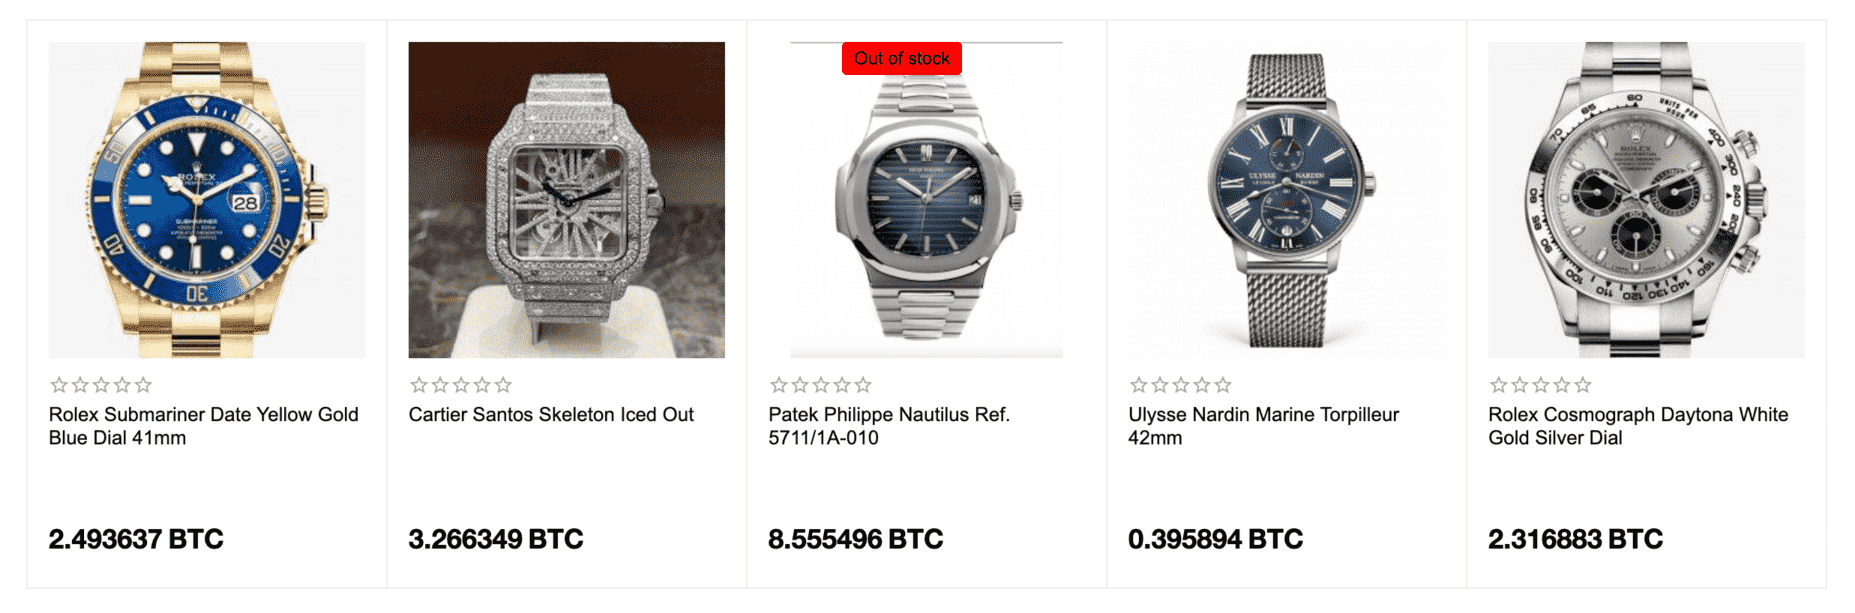 luxe horloges - waar kan ik met bitcoin betalen voor horloges?